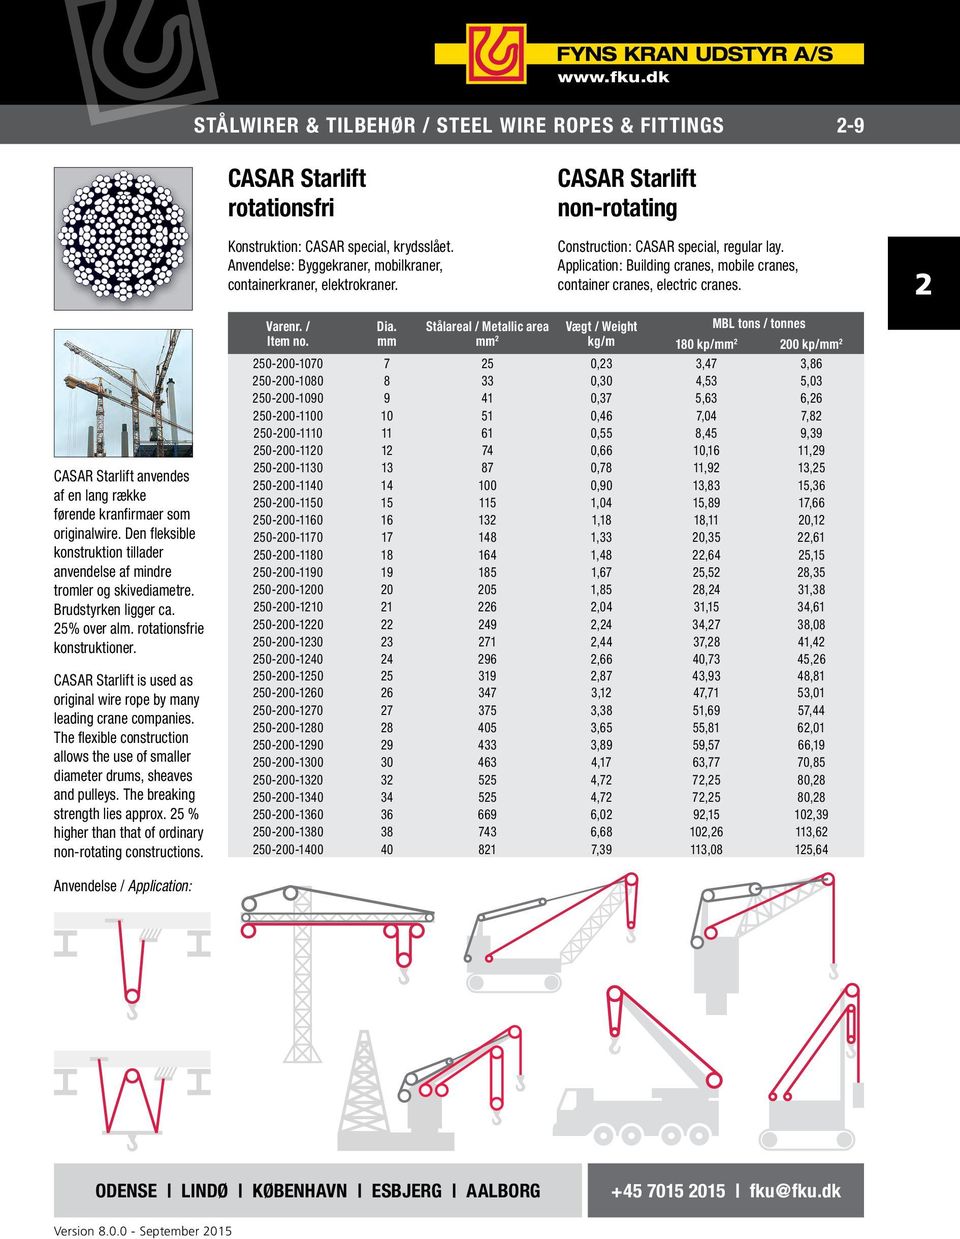 CASAR Starlift anvendes af en lang række førende kran firmaer som originalwire. Den fleksible konstruktion tillader anvendelse af mindre tromler og skivediametre. Brudstyrken ligger ca. 5% over alm.